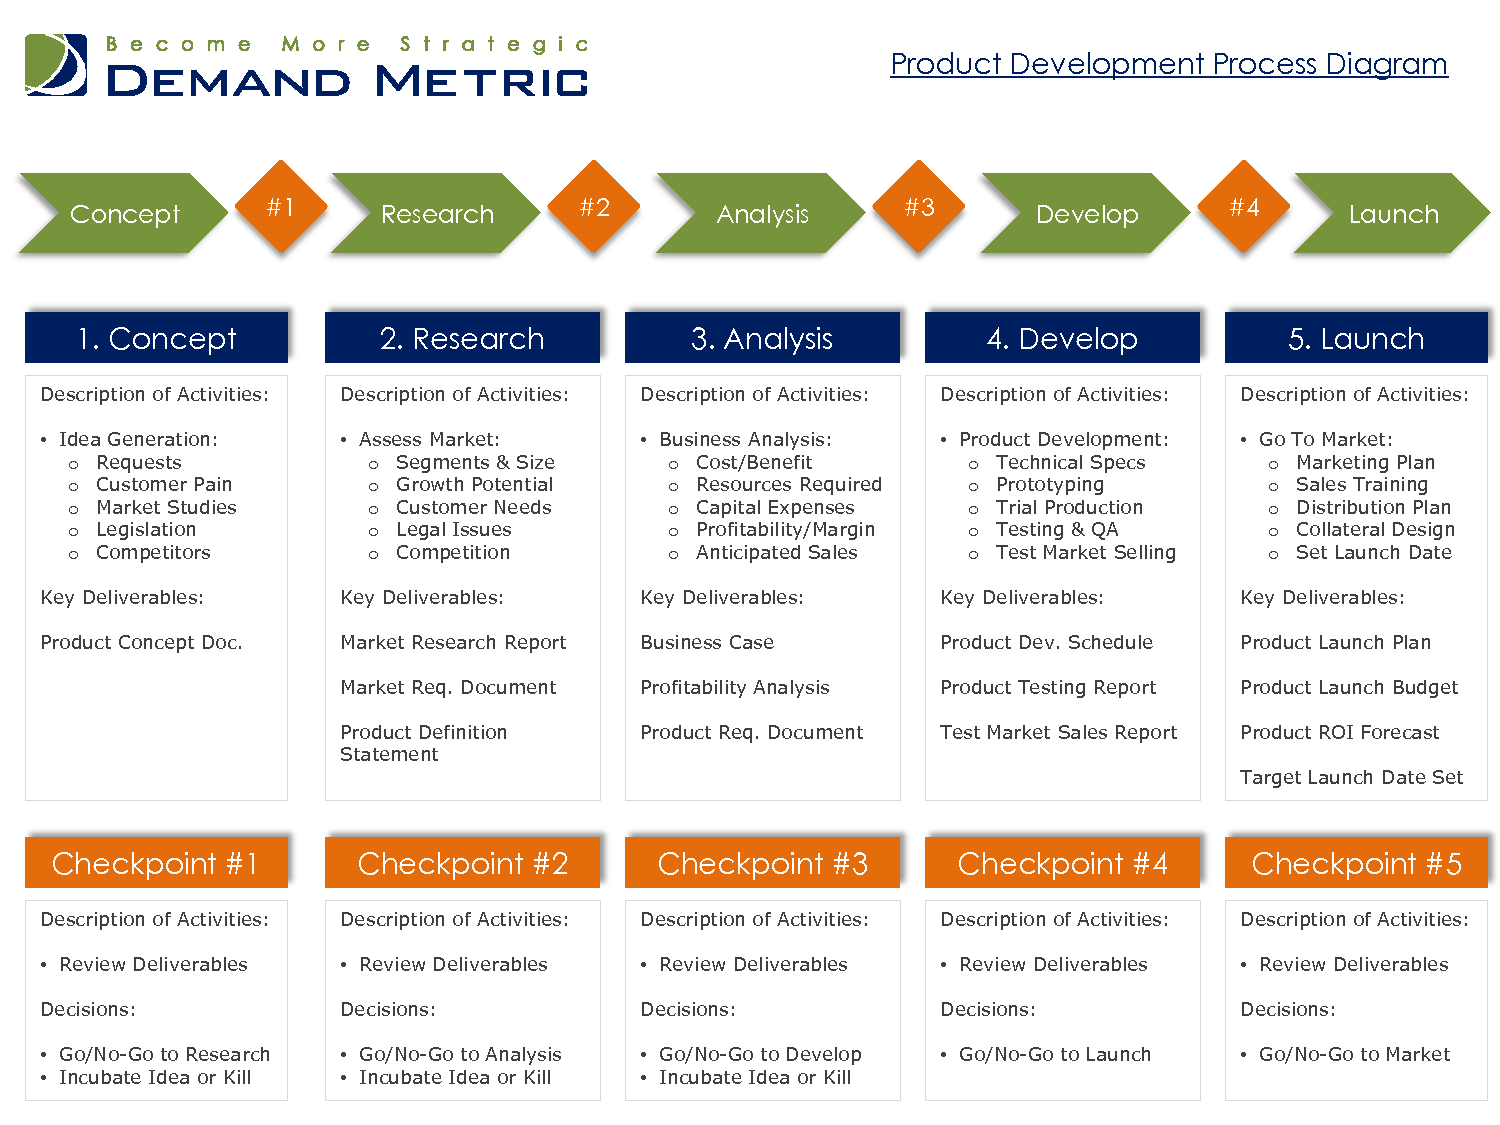 Launch plans. Product Development. Product Development process. New product Development. Product Development Plan.